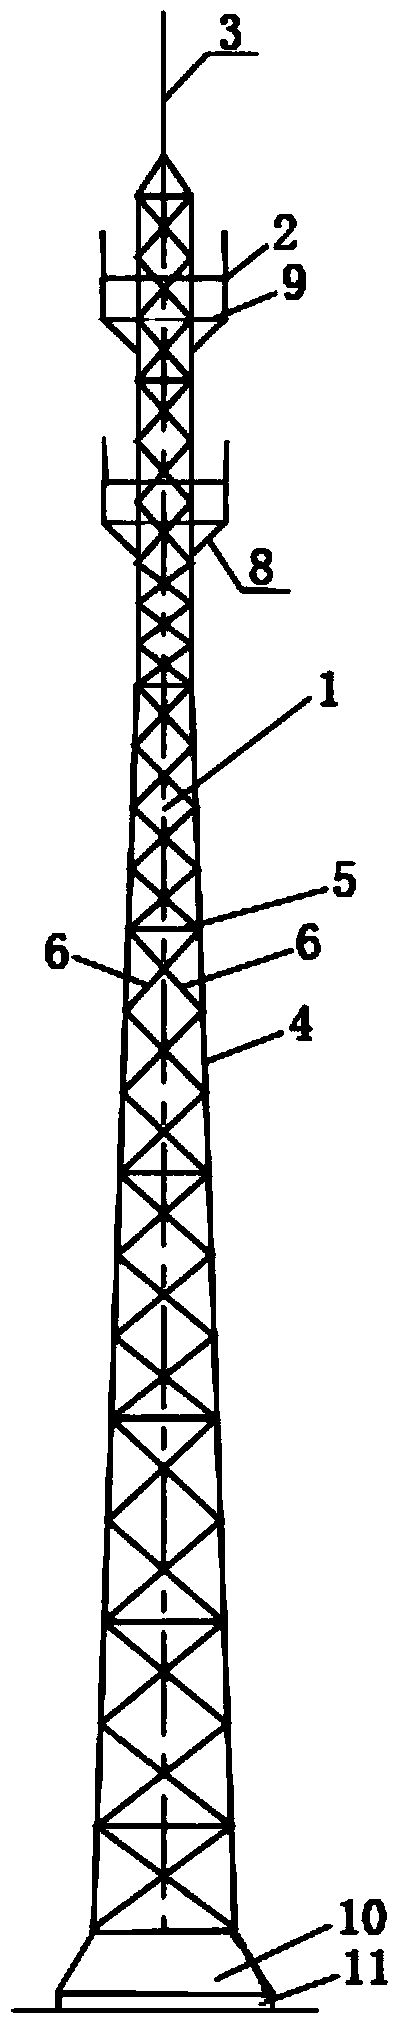 Novel base station communication signal launching tower